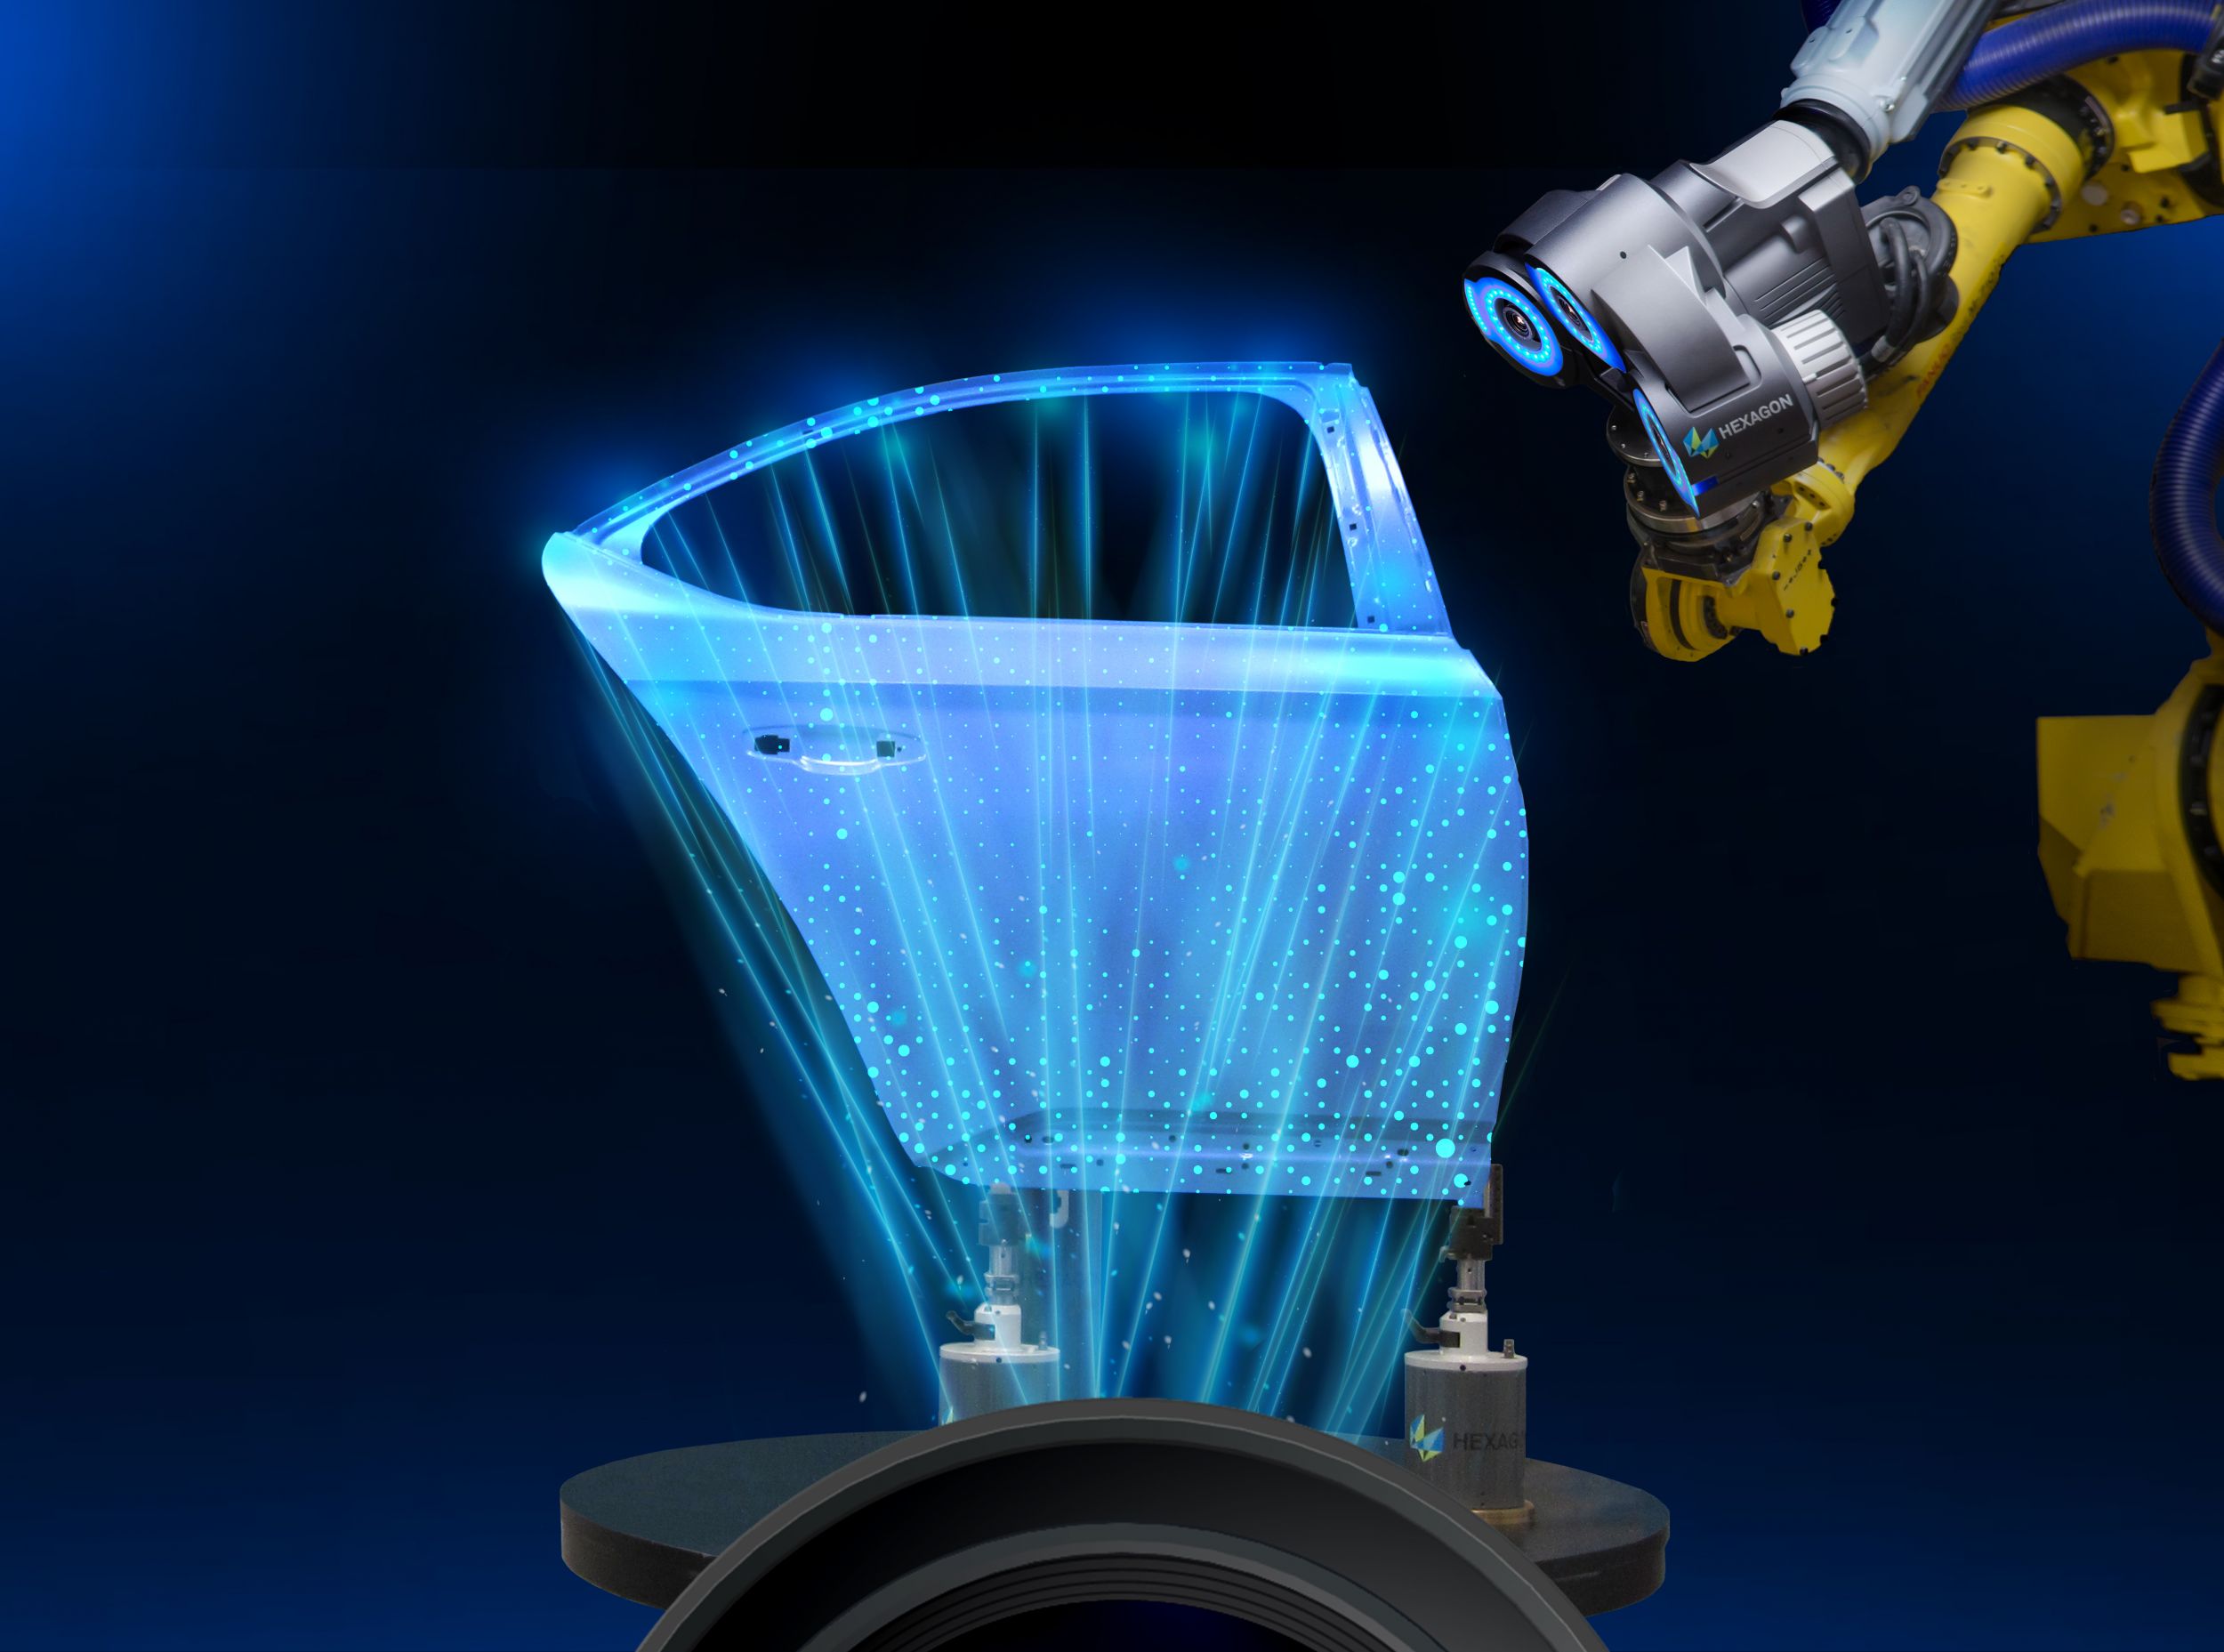 Das LightRunner System projeziert automatisch Millionen von Referenzpunkten auf die Oberfläche eines Bauteils, um eine konstante absolute Positionierung für berührungslose optische High-Speed-3D-Messsysteme zu gewährleisten. (Bild: Hexagon Metrology GmbH)